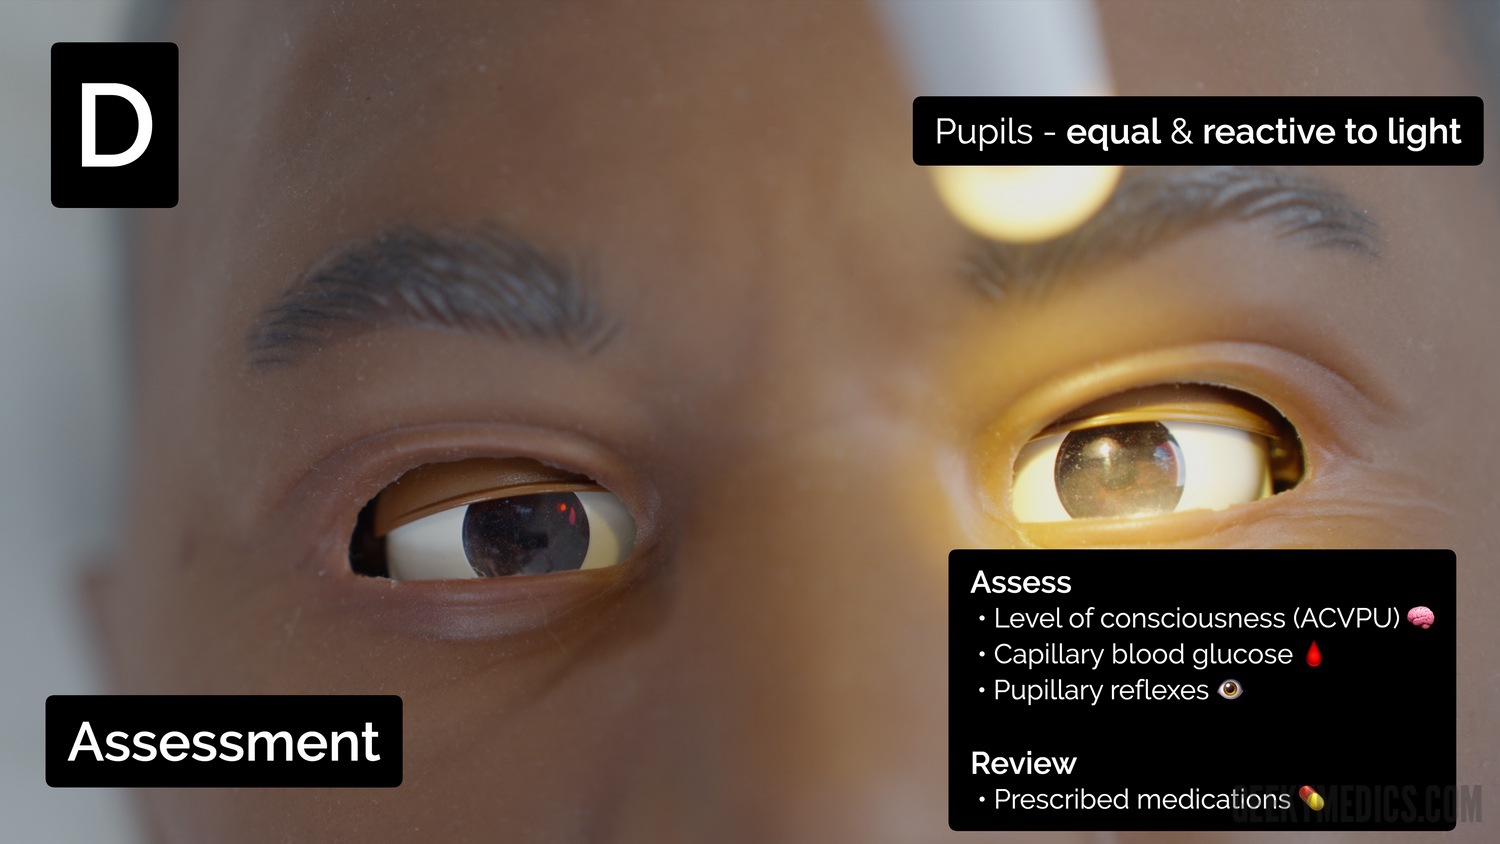 Assess pupillary reflexes